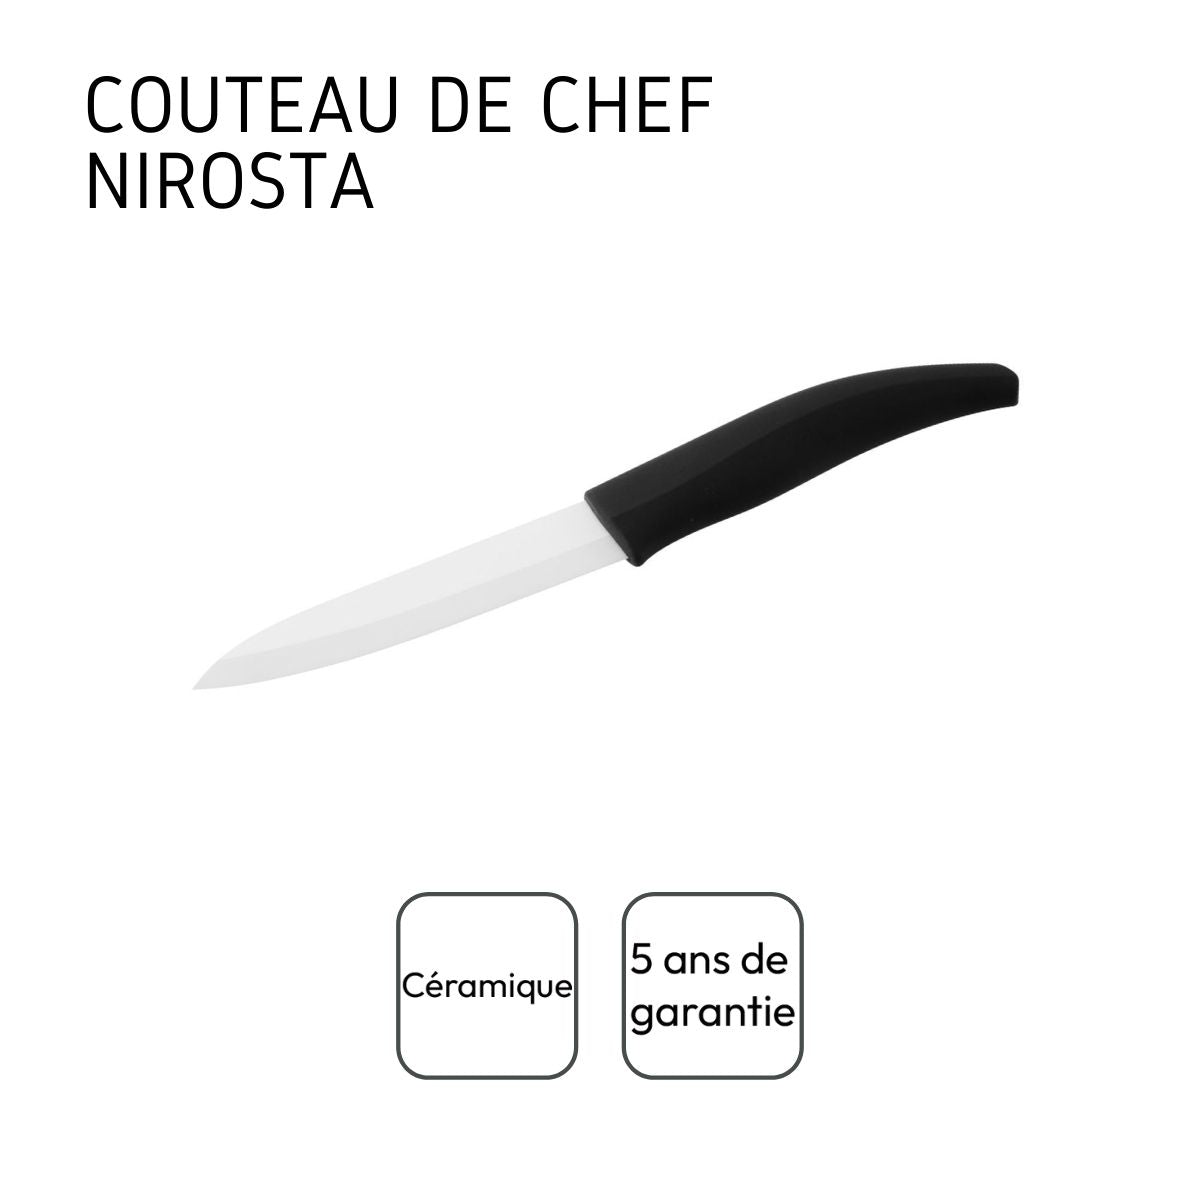 Couteau de chef avec lame en céramique de 12,5 cm de long Nirosta Céramique